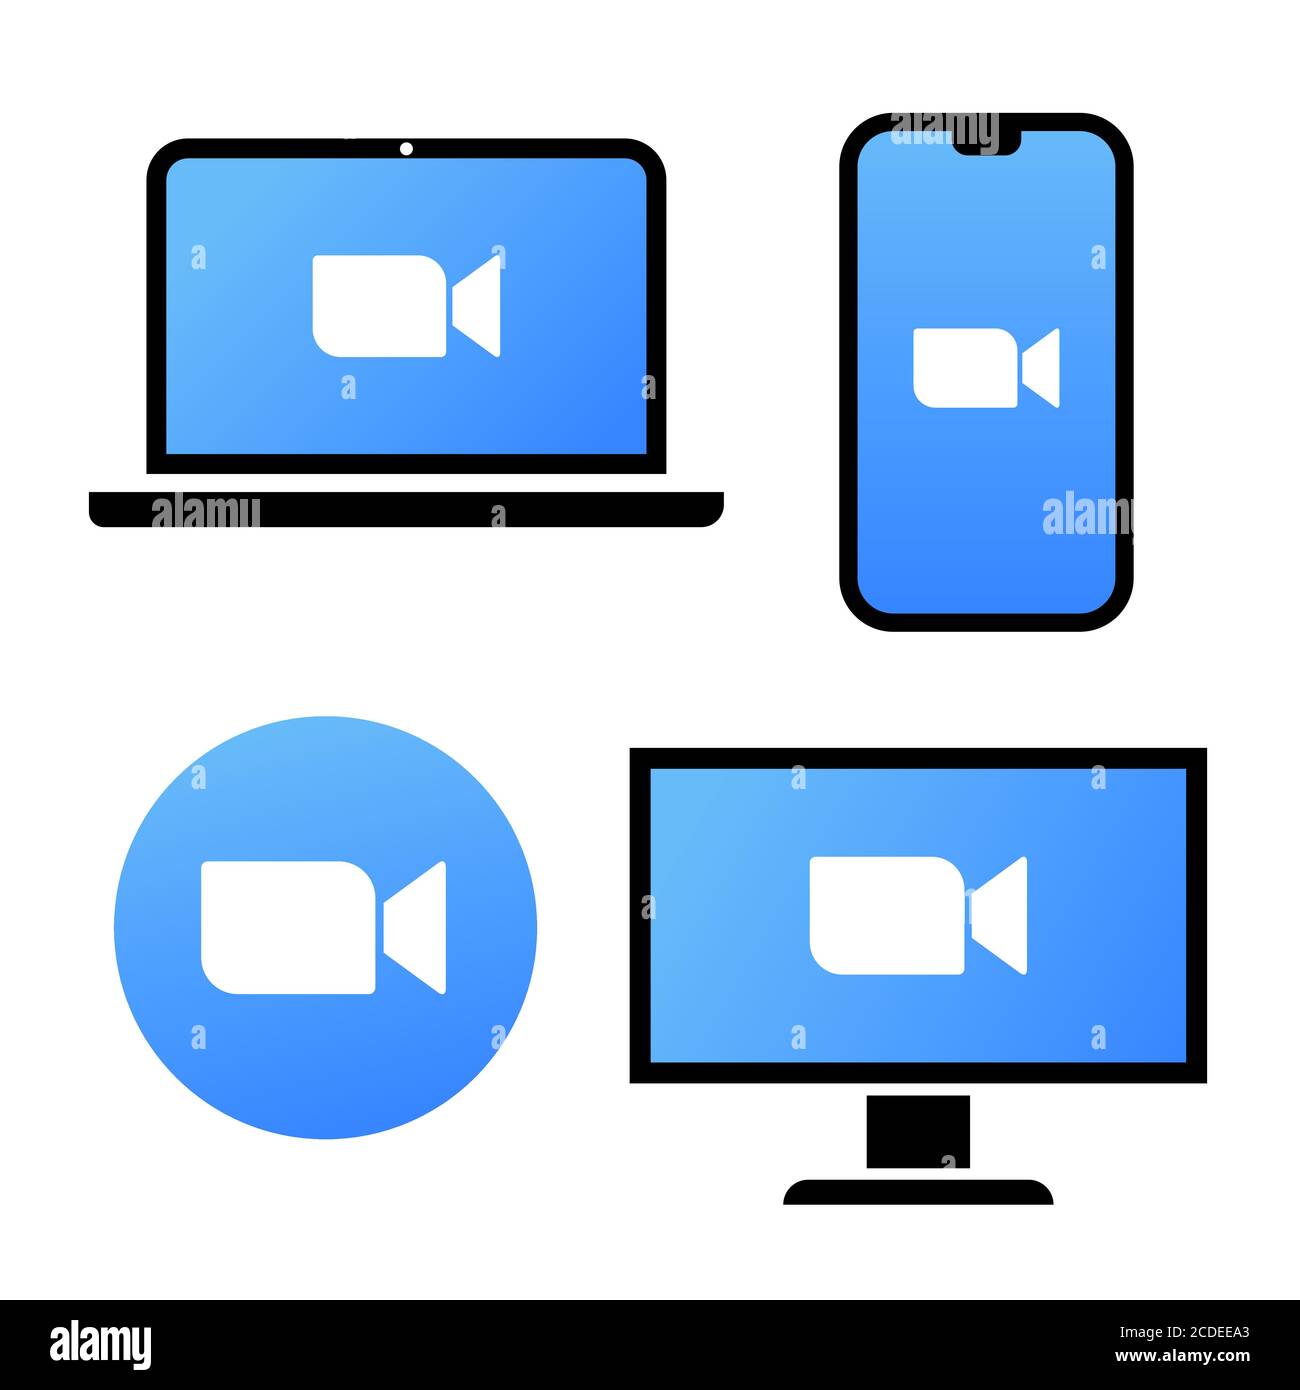 Blaues Kamera-Symbol - Live-Media-Streaming-Anwendung auf verschiedenen Geräten - Laptop, Smartphone, tv, Tablet, Monitor, Konferenz-Videoanrufe mit Stock Vektor